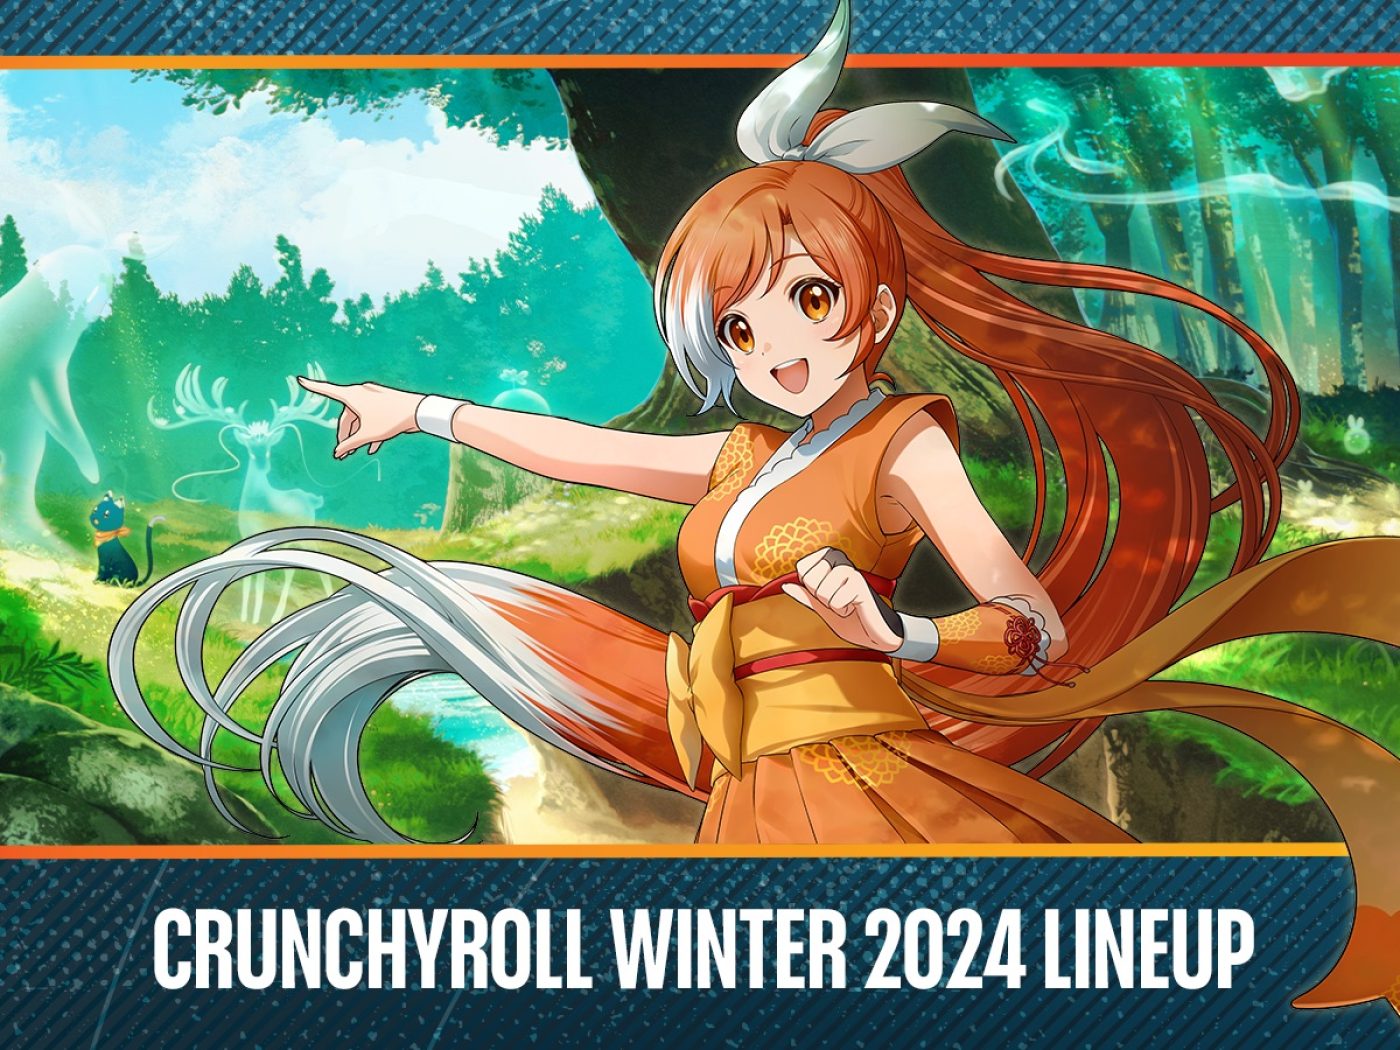 Crunchyroll Announces Their Fall Anime Line Up For 2021